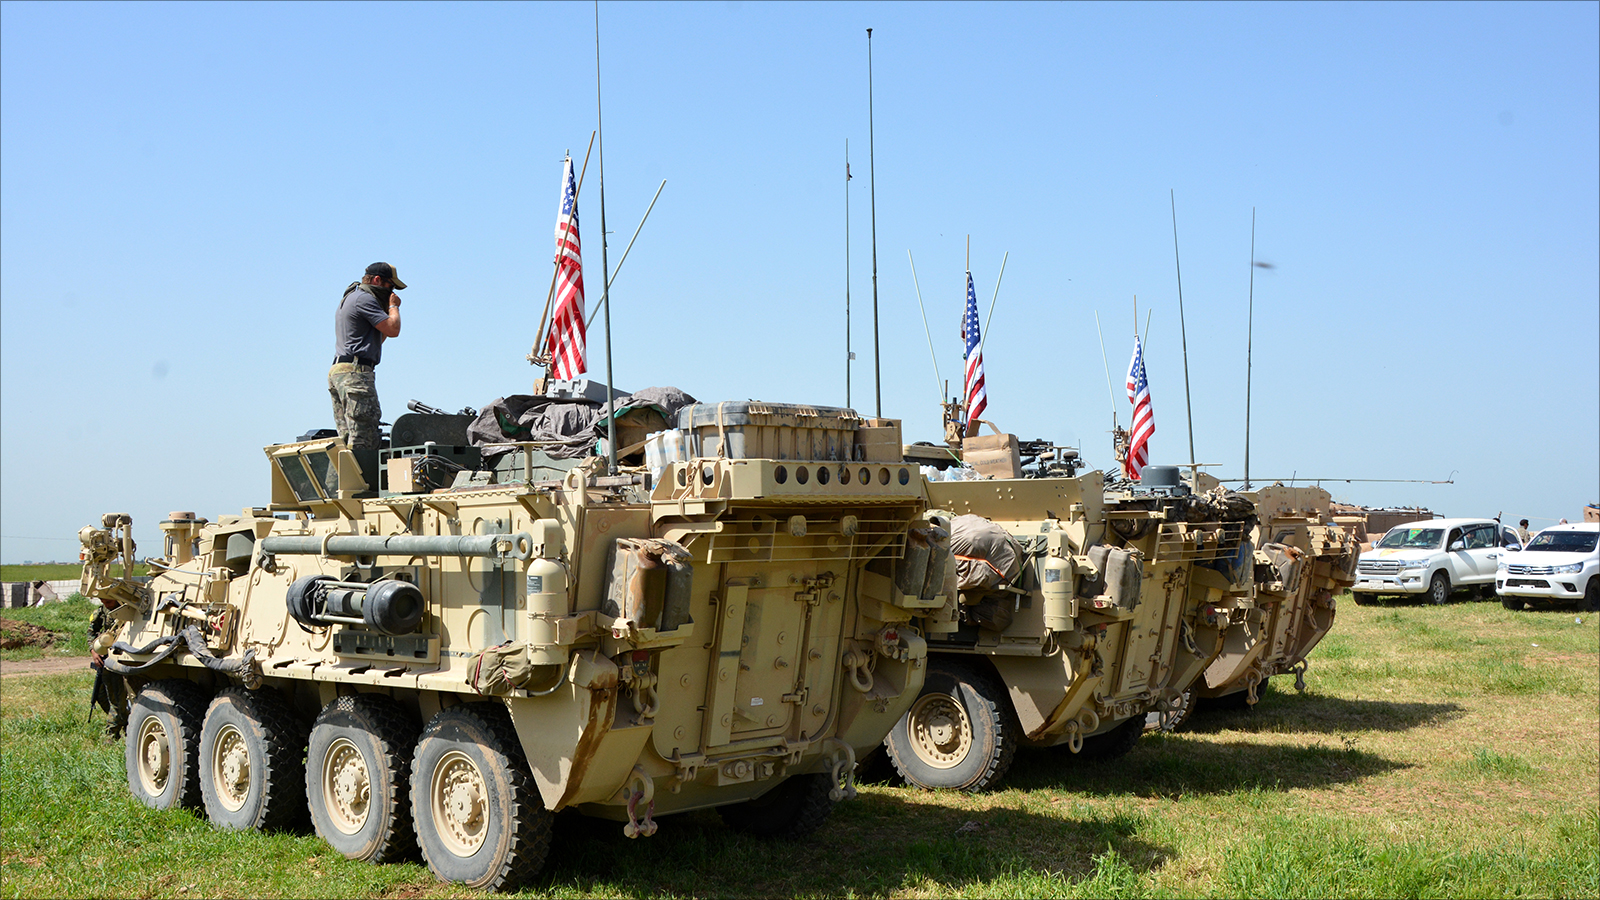 ‪قوات أميركية في مناطق قرب الحدود التركية شمال سوريا‬ (الأوروبية-أرشيف)